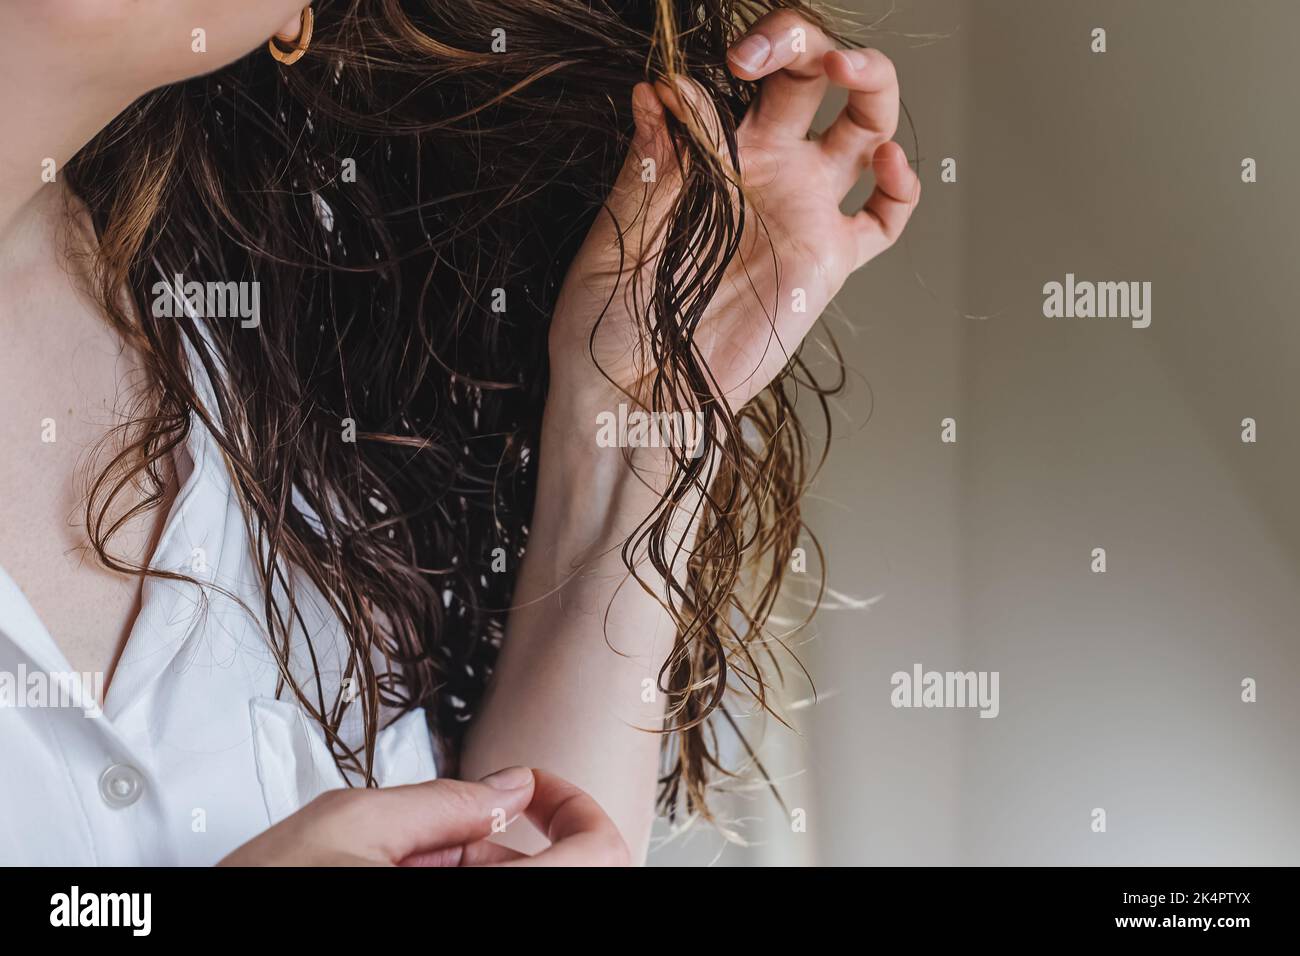 Thick curly hair Banque de photographies et d'images à haute résolution -  Page 2 - Alamy